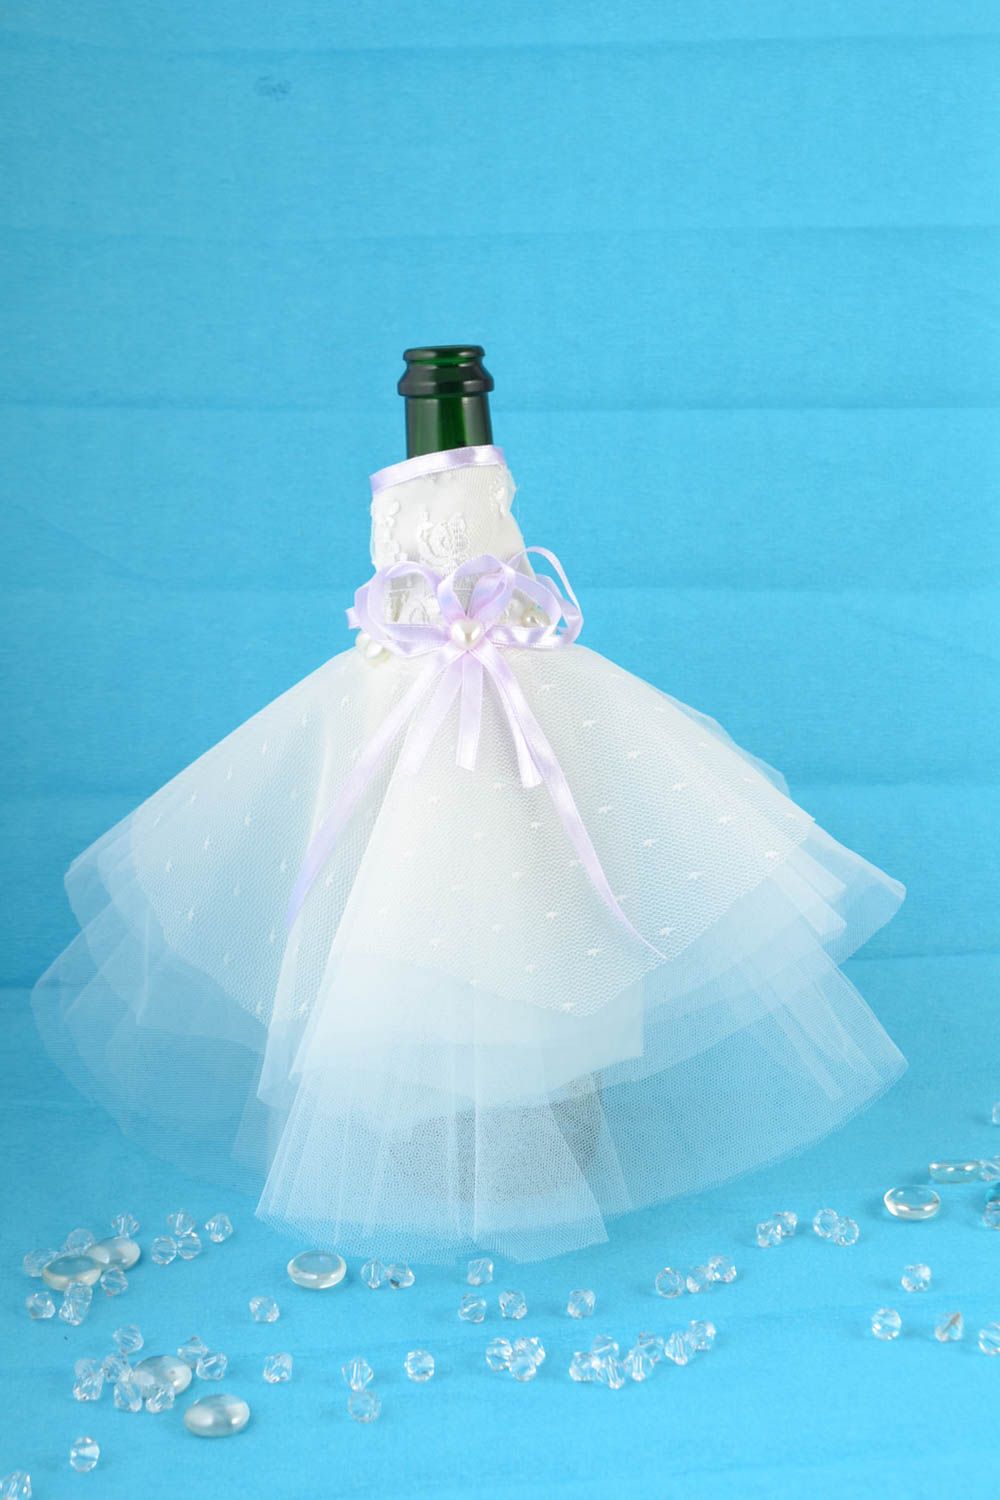 Одежда невесты на бутылку шампанского белая с сиреневым красивая ручной работы фото 1